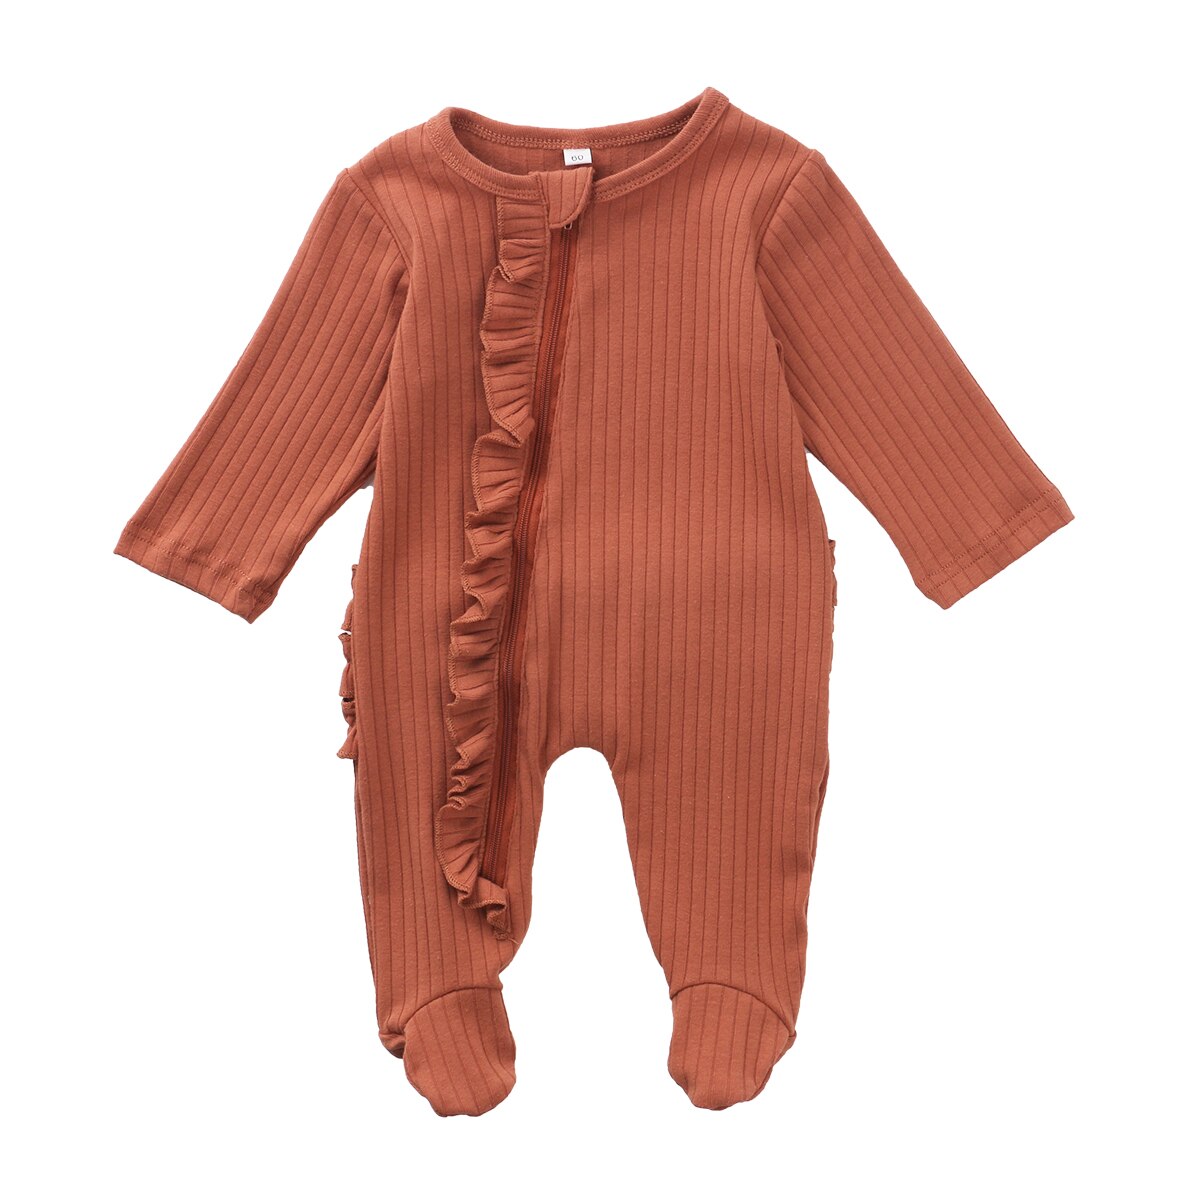 Baby pyjamas spædbarn sødt tøj 0-6 måneder nyfødt dreng pige solid pjusket wrap fod kostume pyjamas blødt varmt outfit: Orange / 0-3 måneder